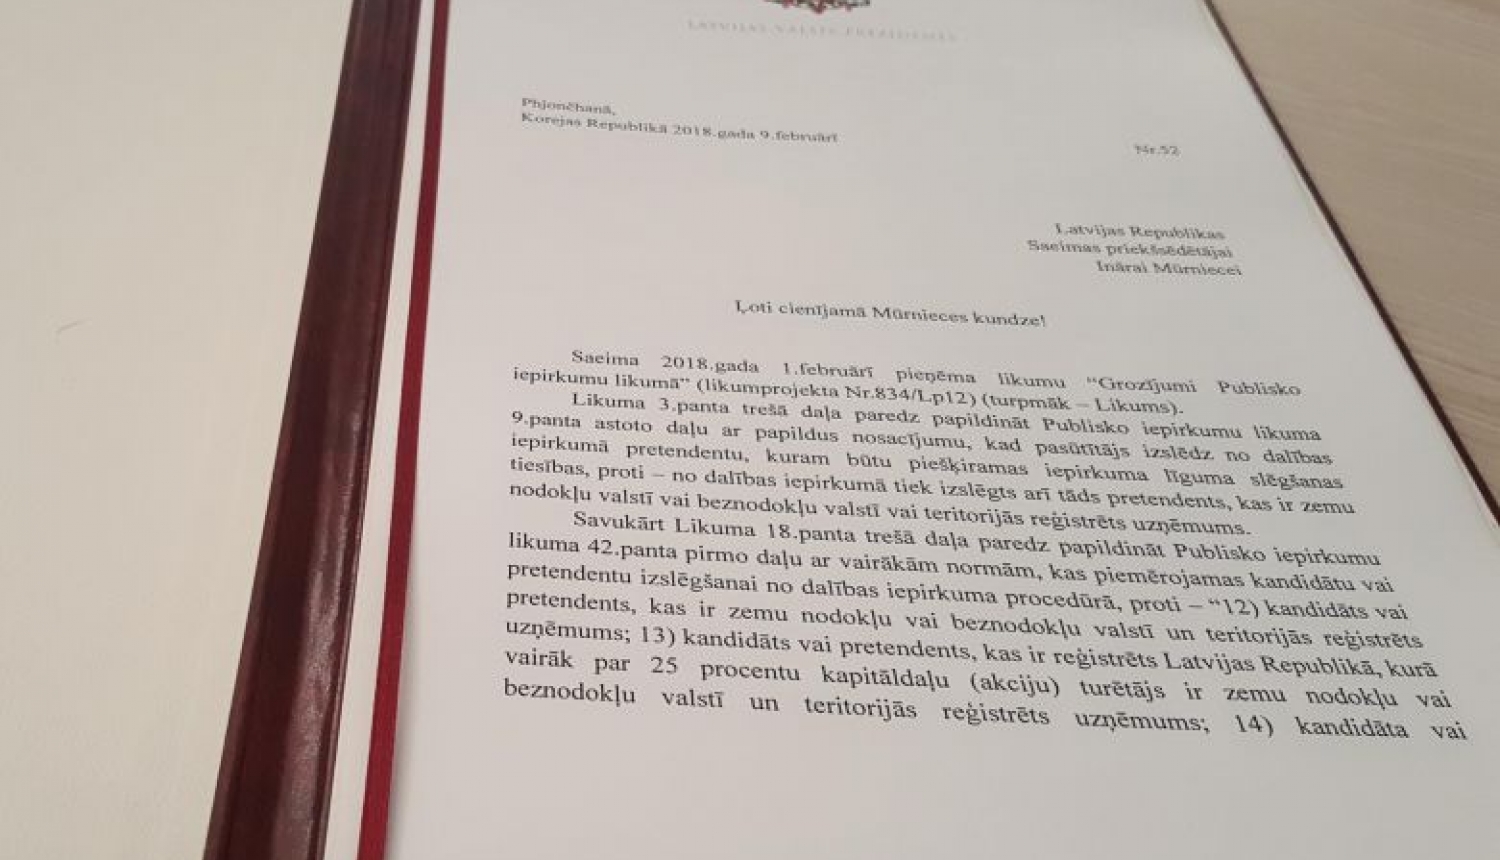 Valsts prezidents nodod otrreizējai caurlūkošanai Saeimai grozījumus Publisko iepirkumu likumā